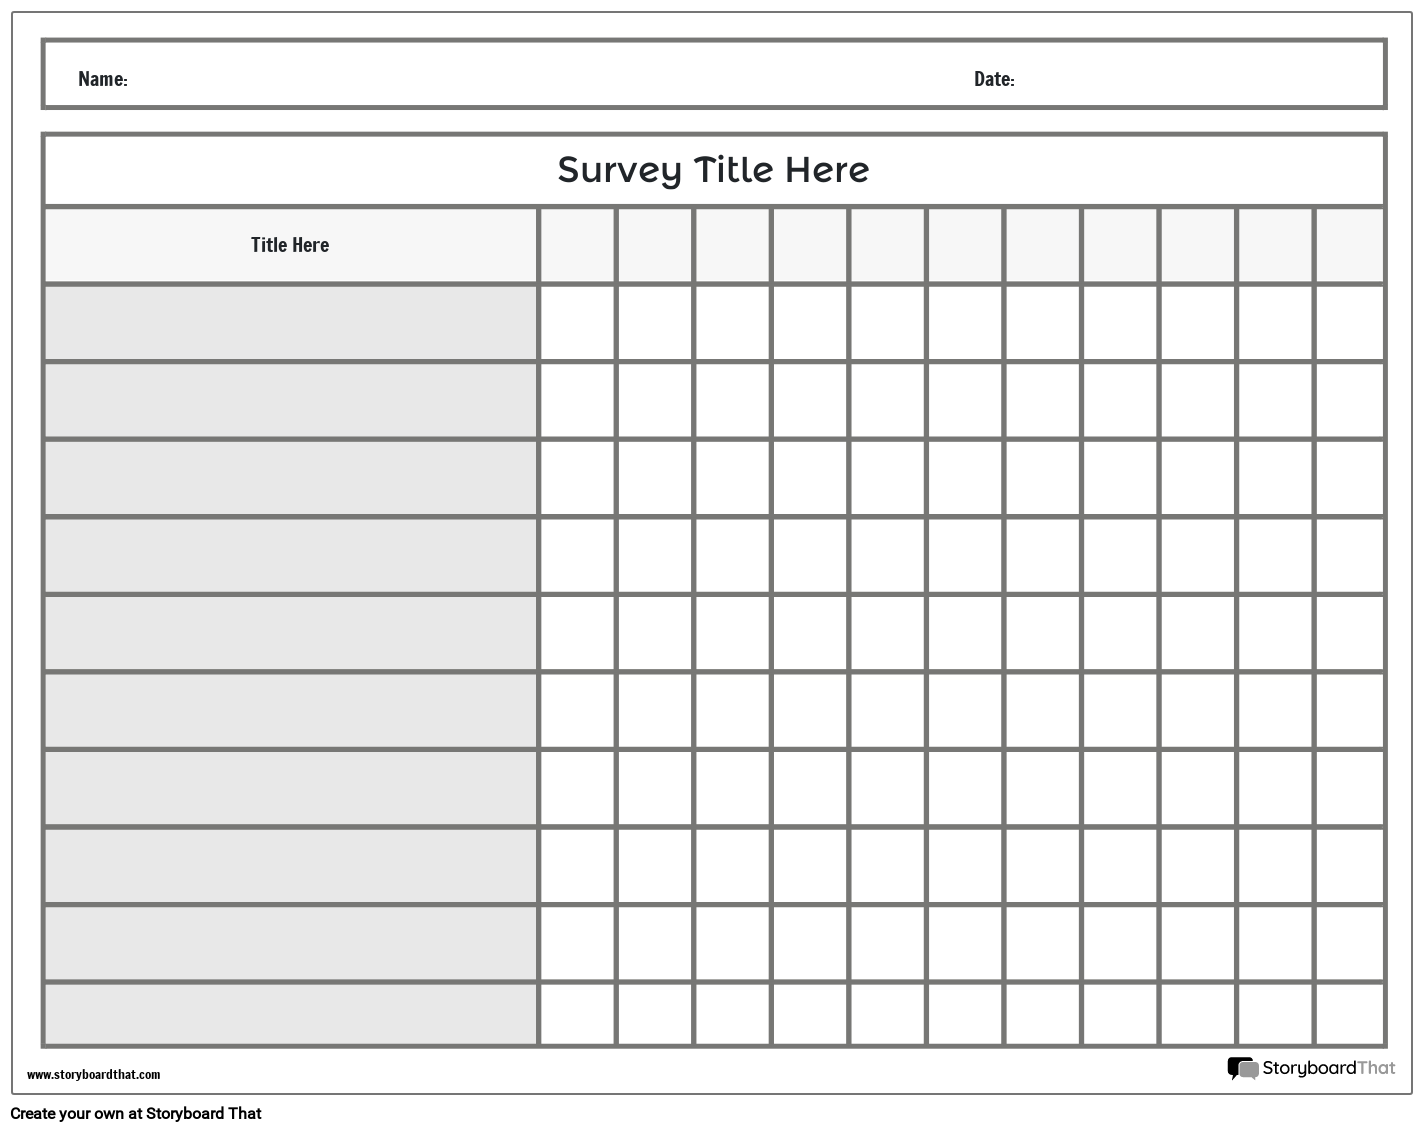 Landscape Table Based Survey Worksheet Design